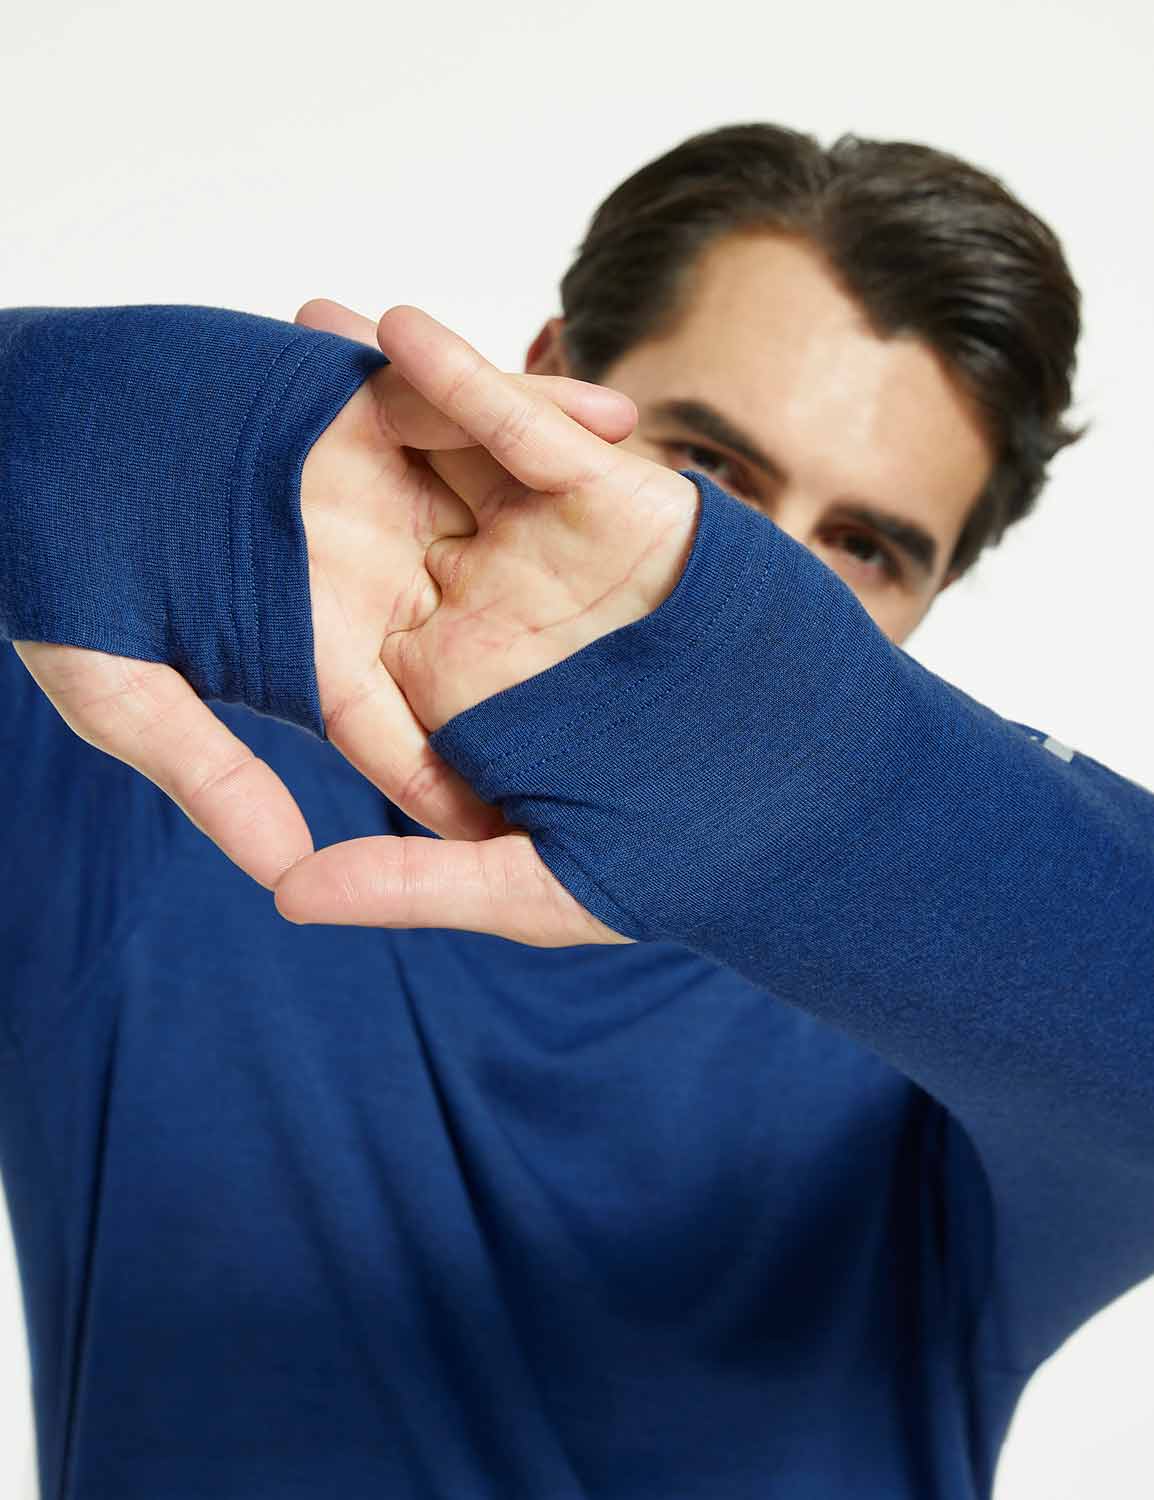 Baleaf Men's Merino Wool Hooded Base Layer Shirts Quartz blue with Thumbhole